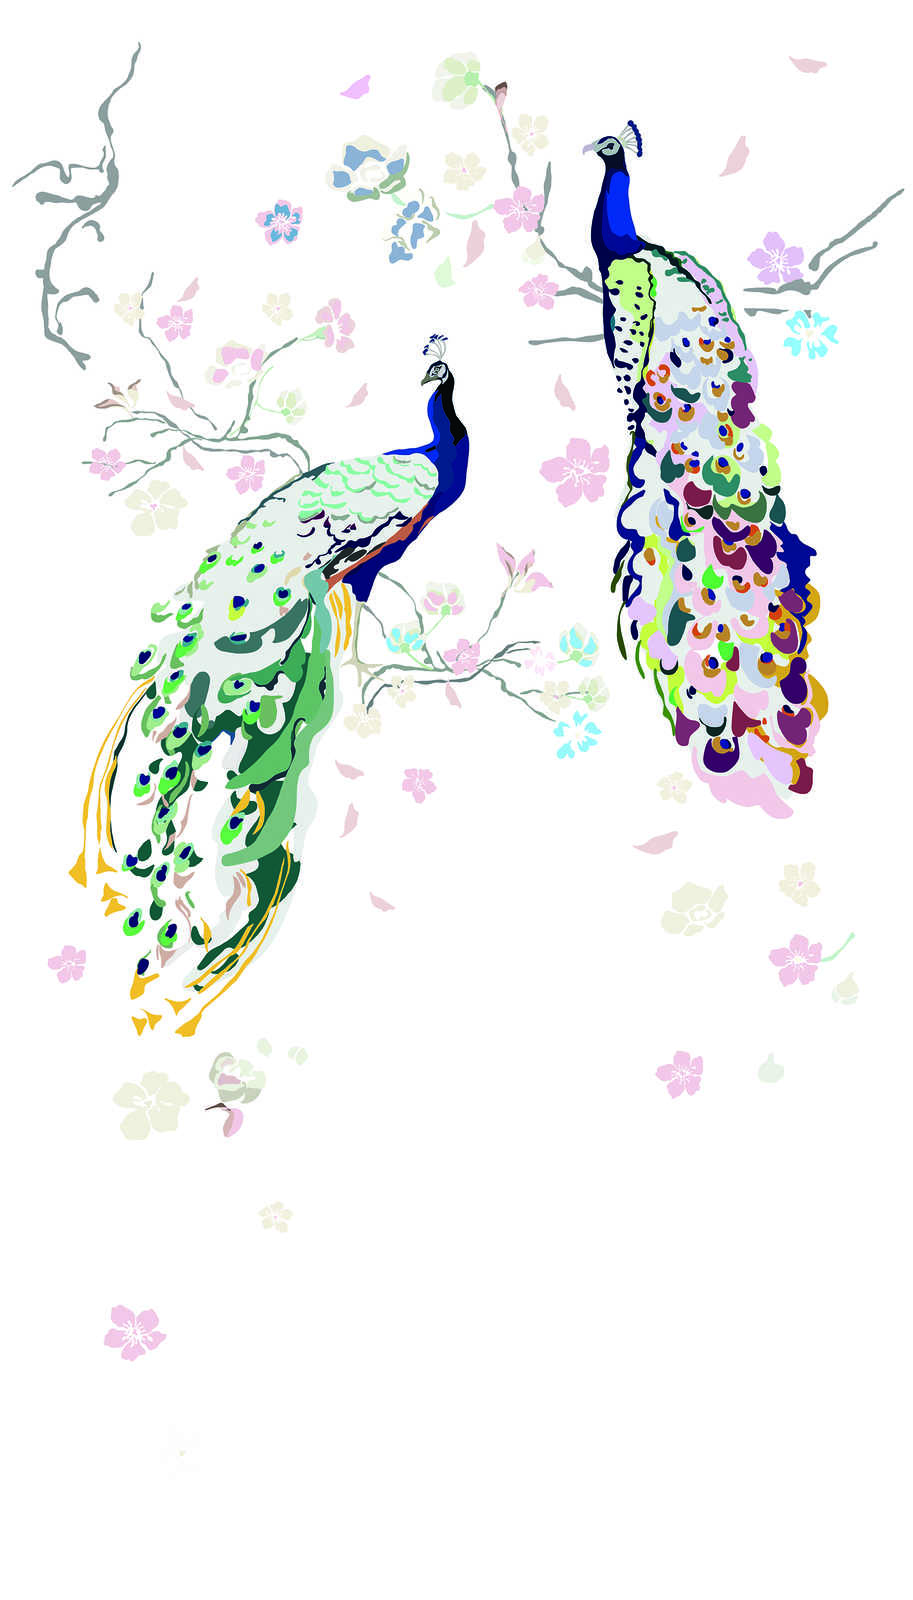             Vliestapete mit Pfau und Blumen – weiß, bunt, blau, grün, rosa
        